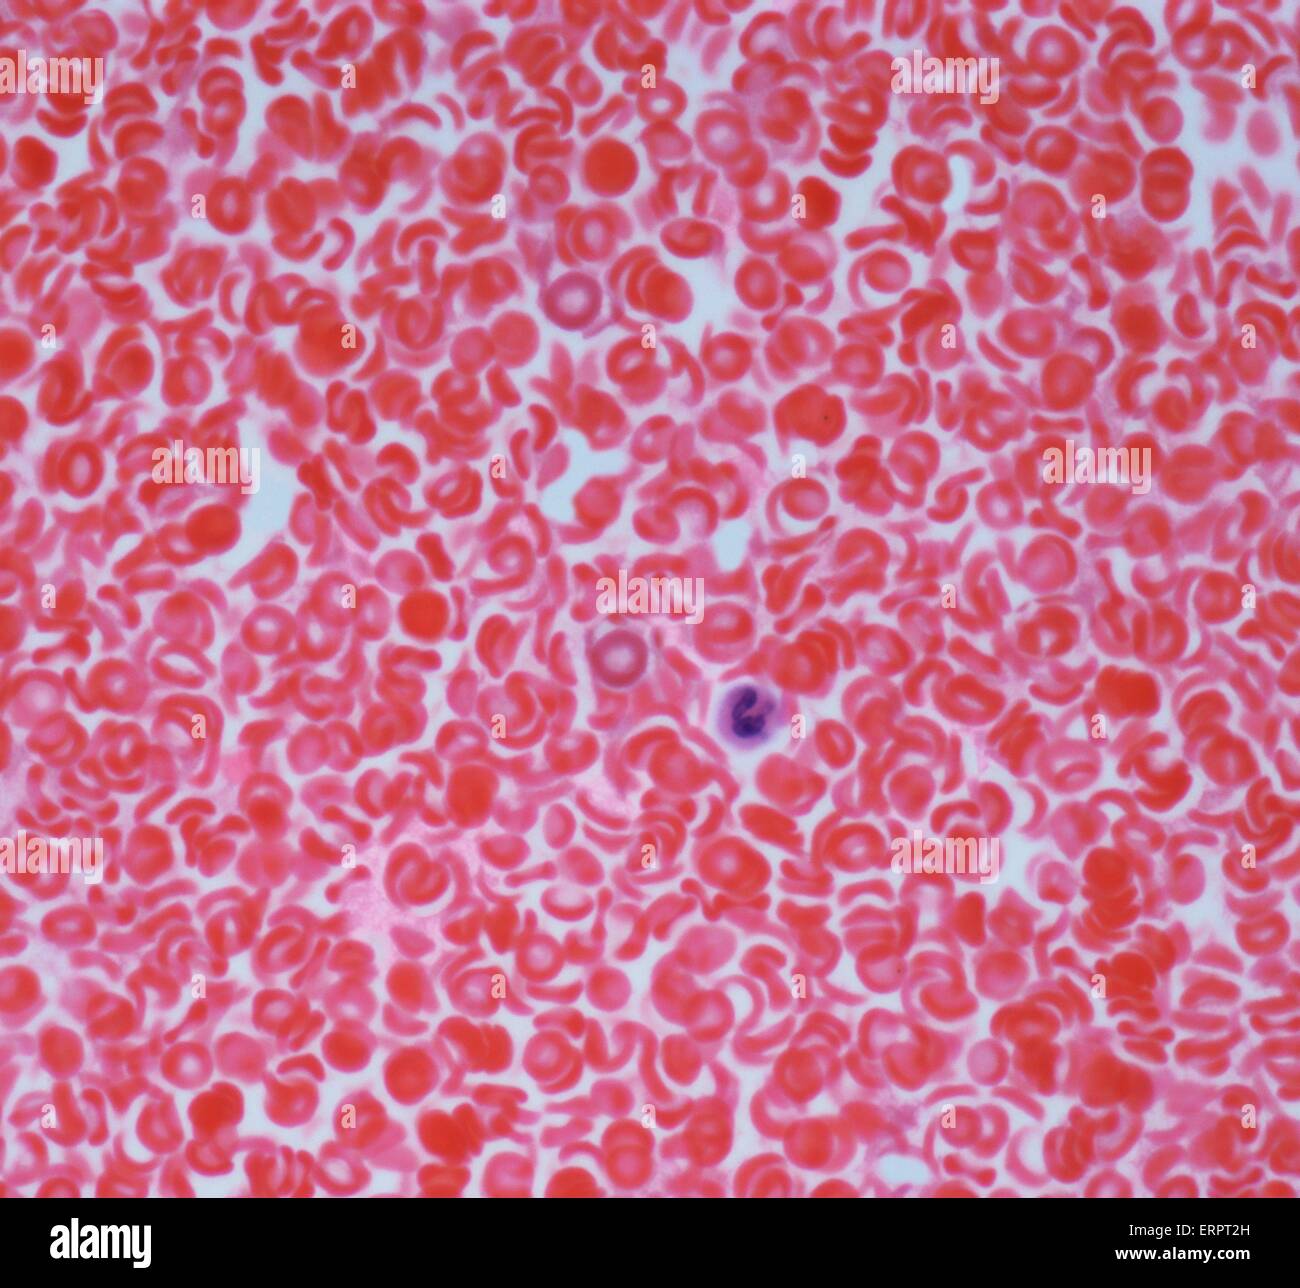 Blut. Leichte Schliffbild der roten Blutkörperchen (Erythrozyten, rot) in einem Blutgefäß. Eine weiße Zelle ist sichtbar (Mitte). Vergrößerung: X500 wenn bei 10 cm breite gedruckt. Stockfoto